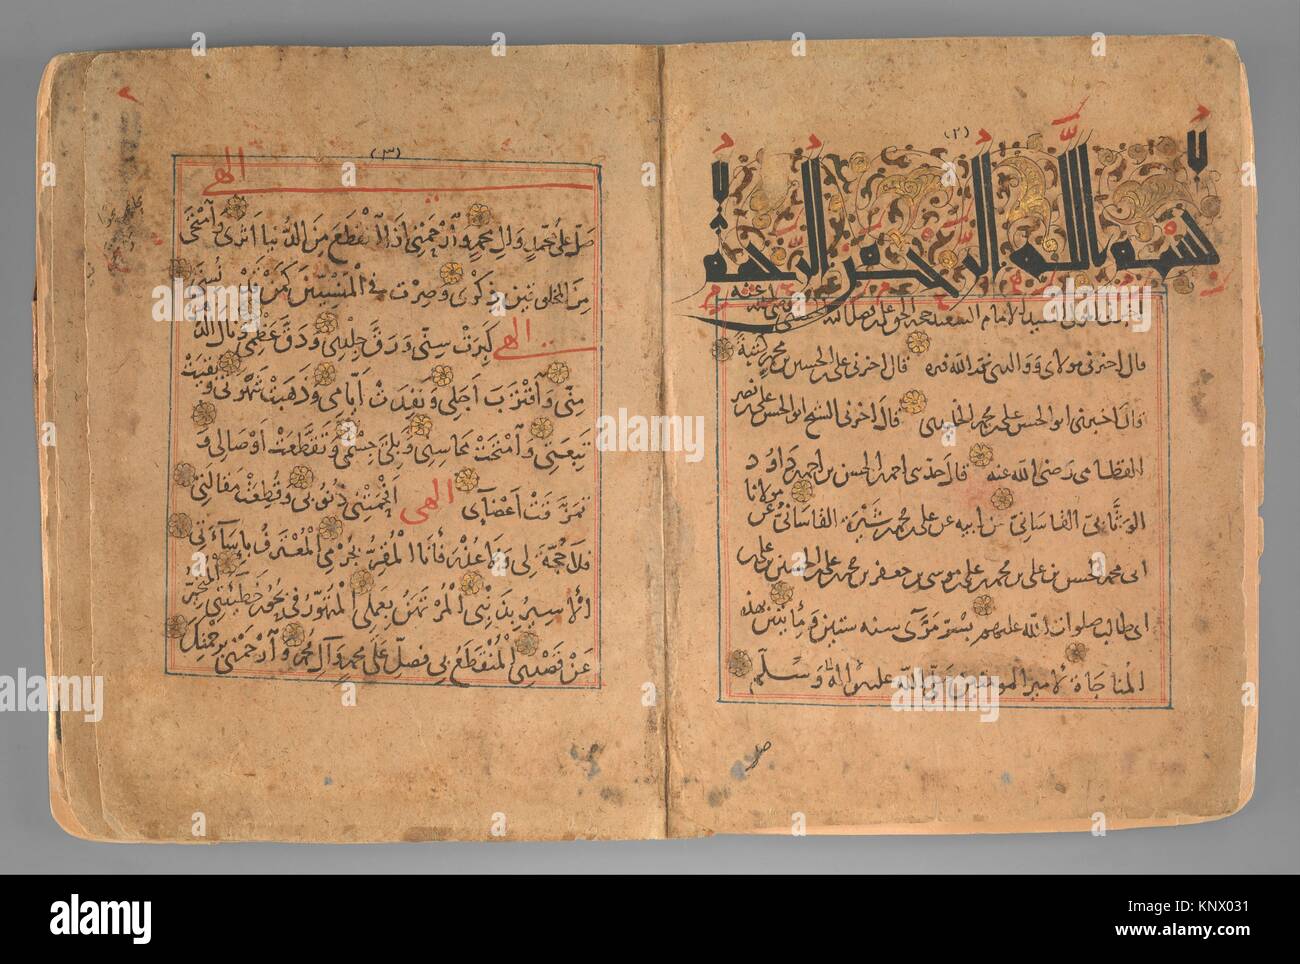 Munajat (vertrauliche Gespräche) von 'Ali ibn Abu-Talib. Objekt Name: Nicht-illustrierte Handschrift; Datum: Ca. 1200; Geographie: zugeschrieben, Irak, eventuell Stockfoto